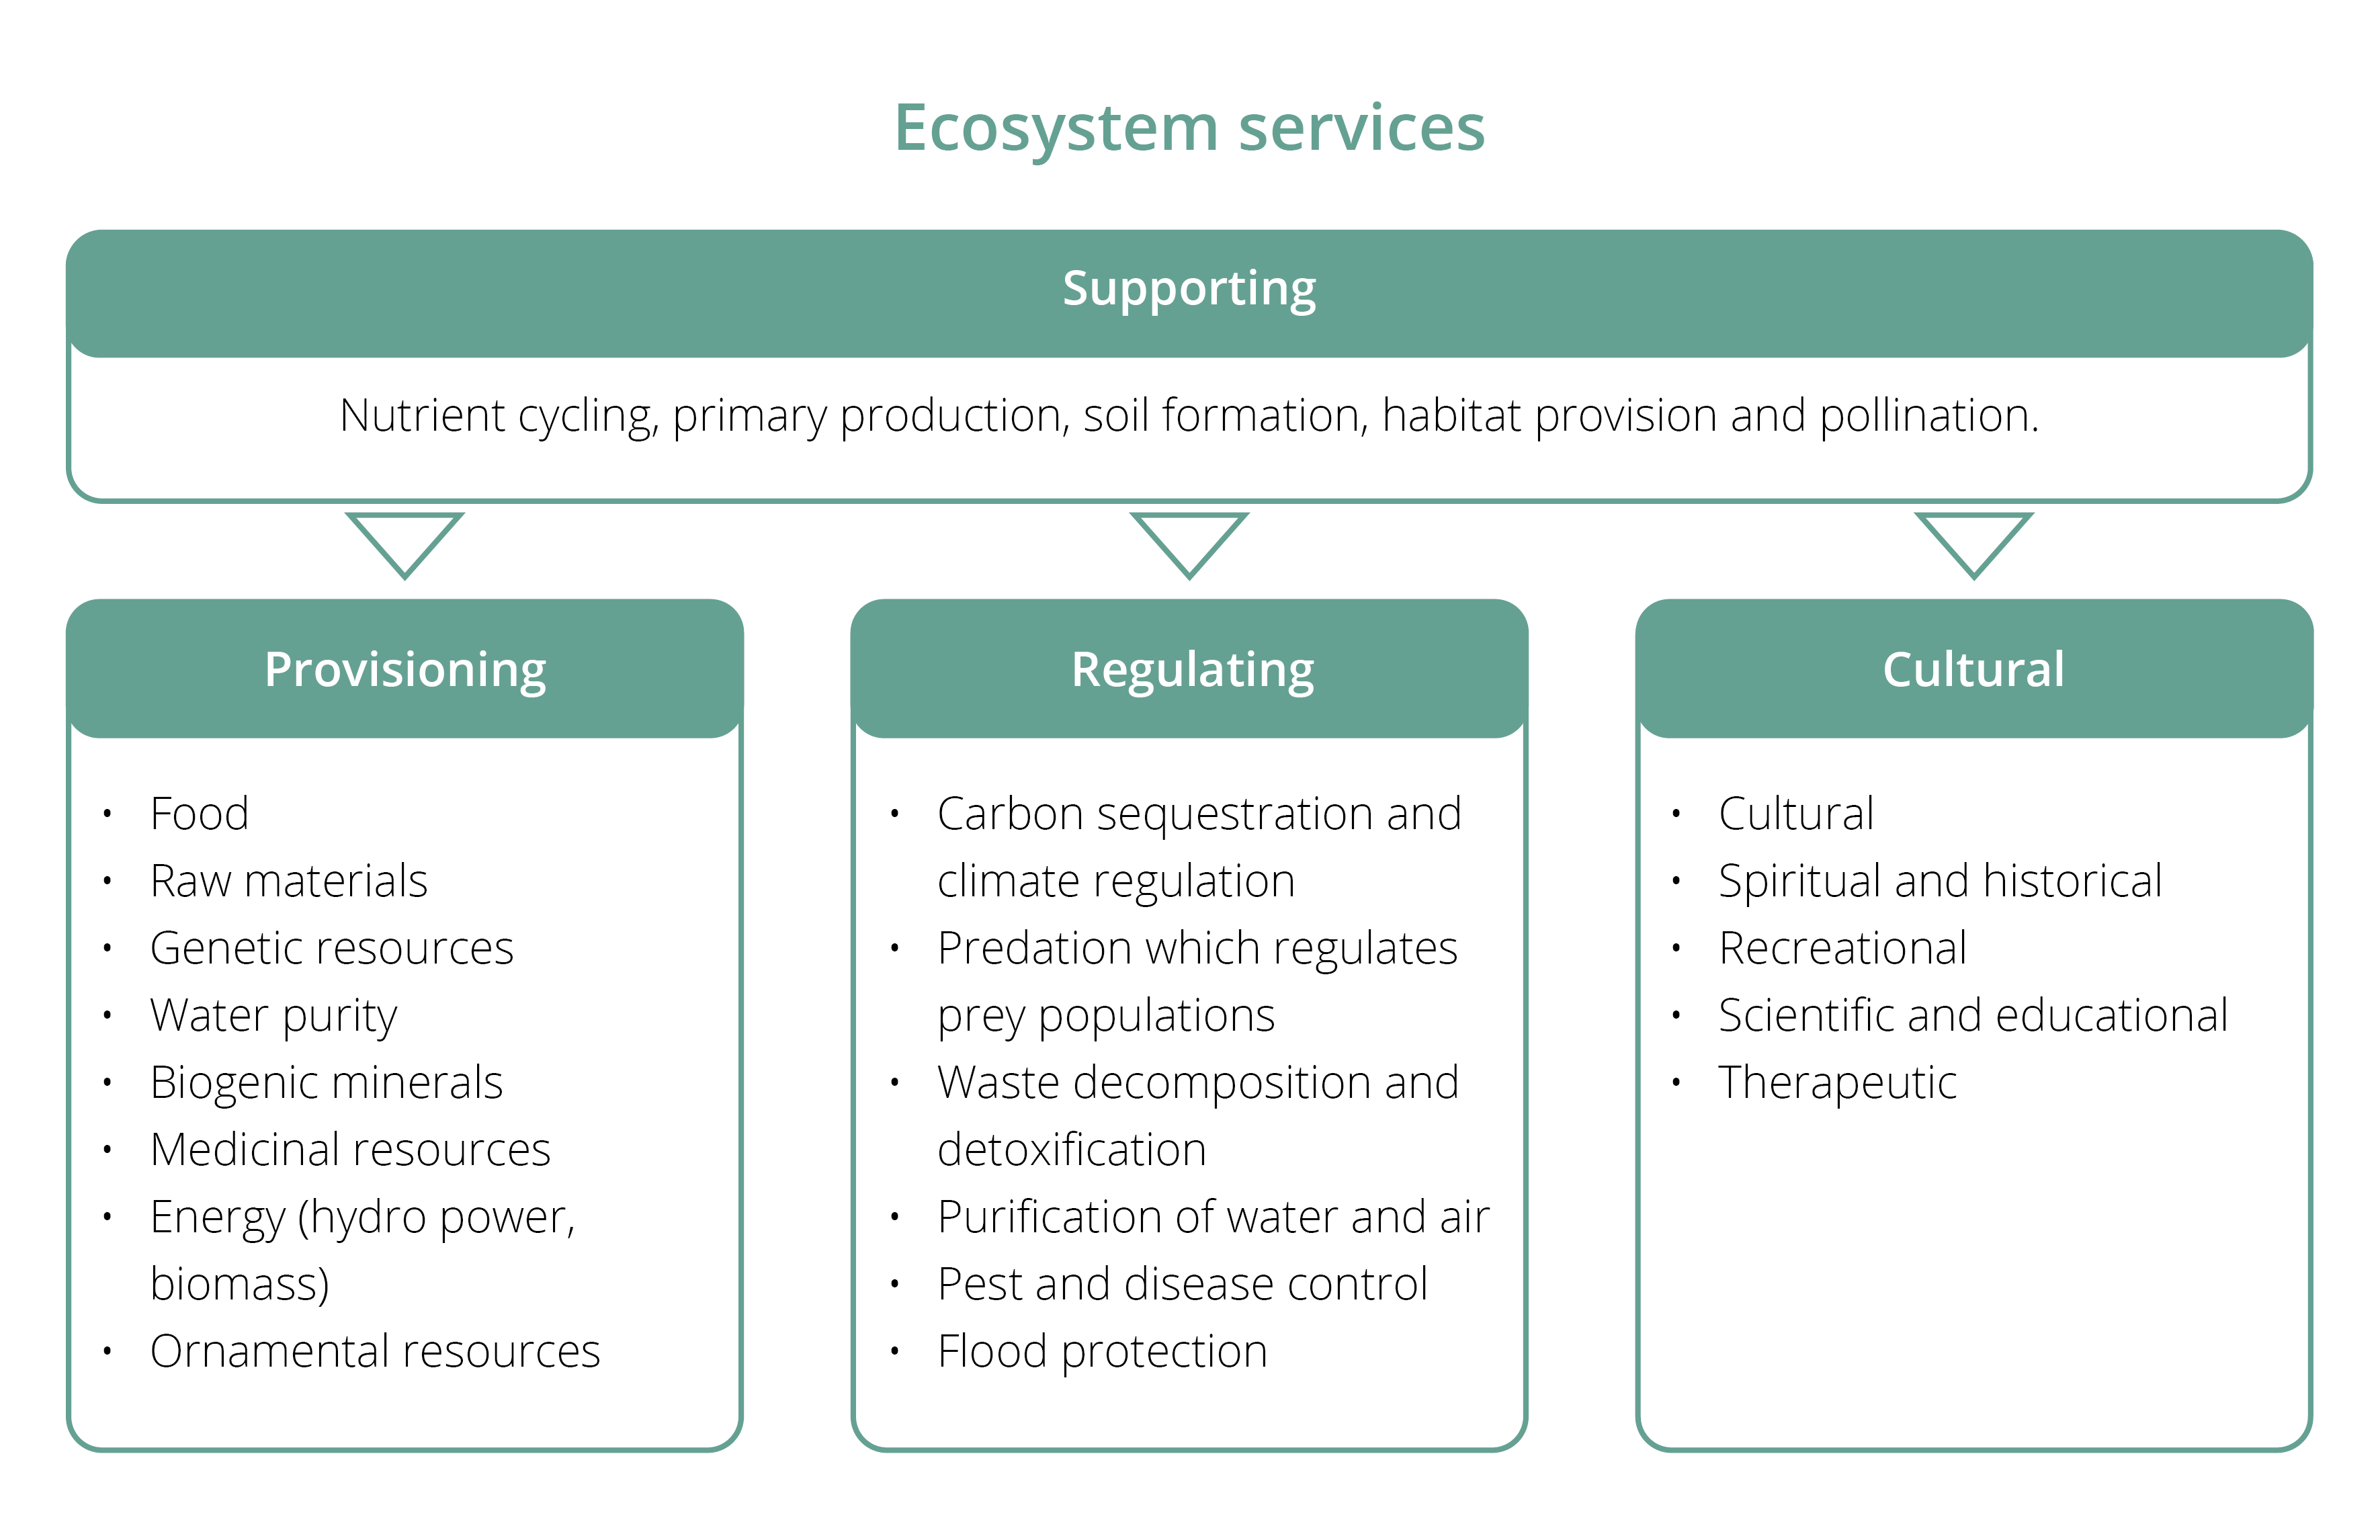 生态系统服务分为四类